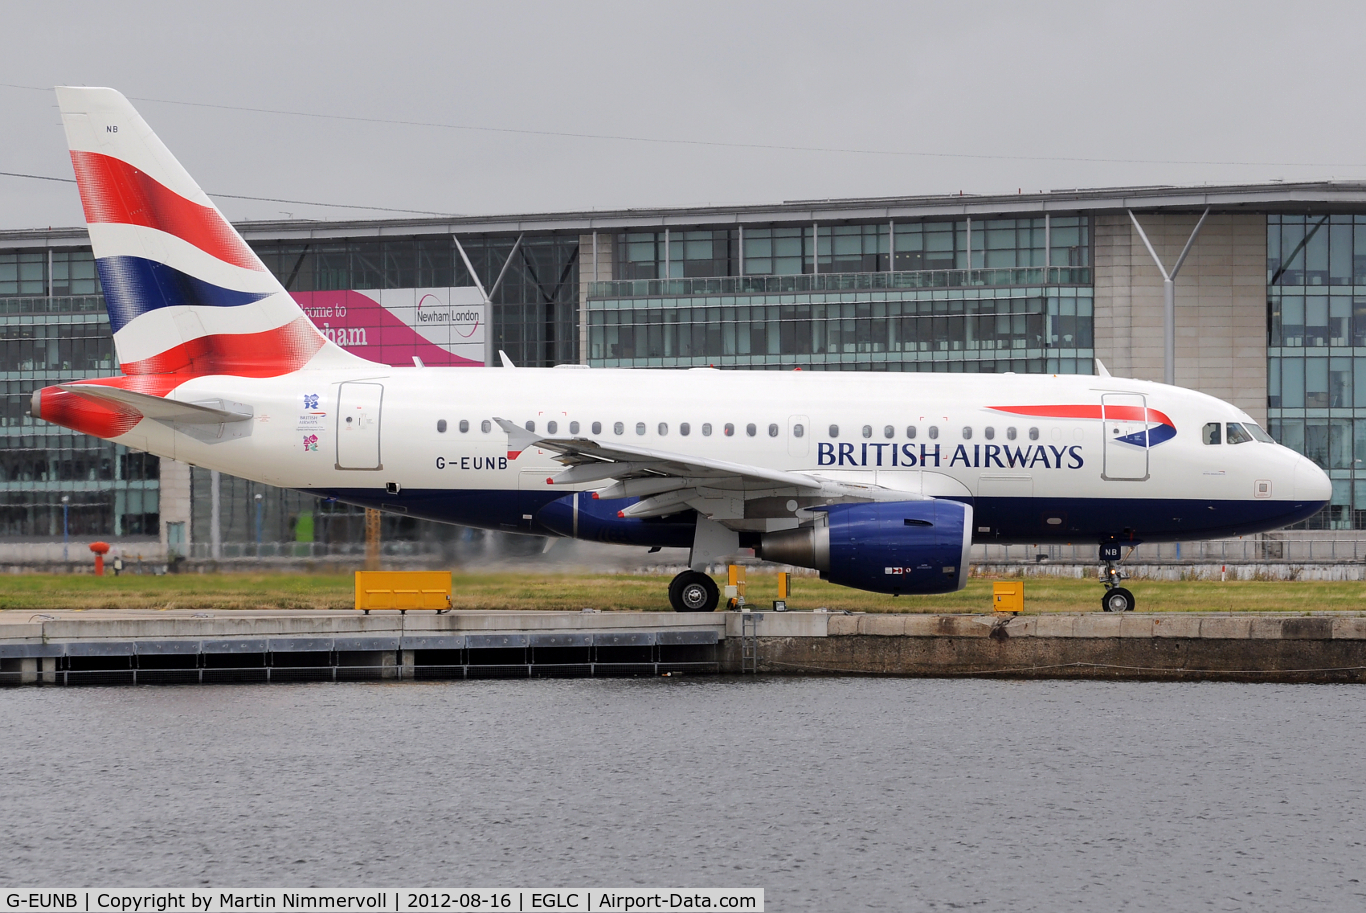 G-EUNB, 2009 Airbus A318-112 C/N 4039, British Airways